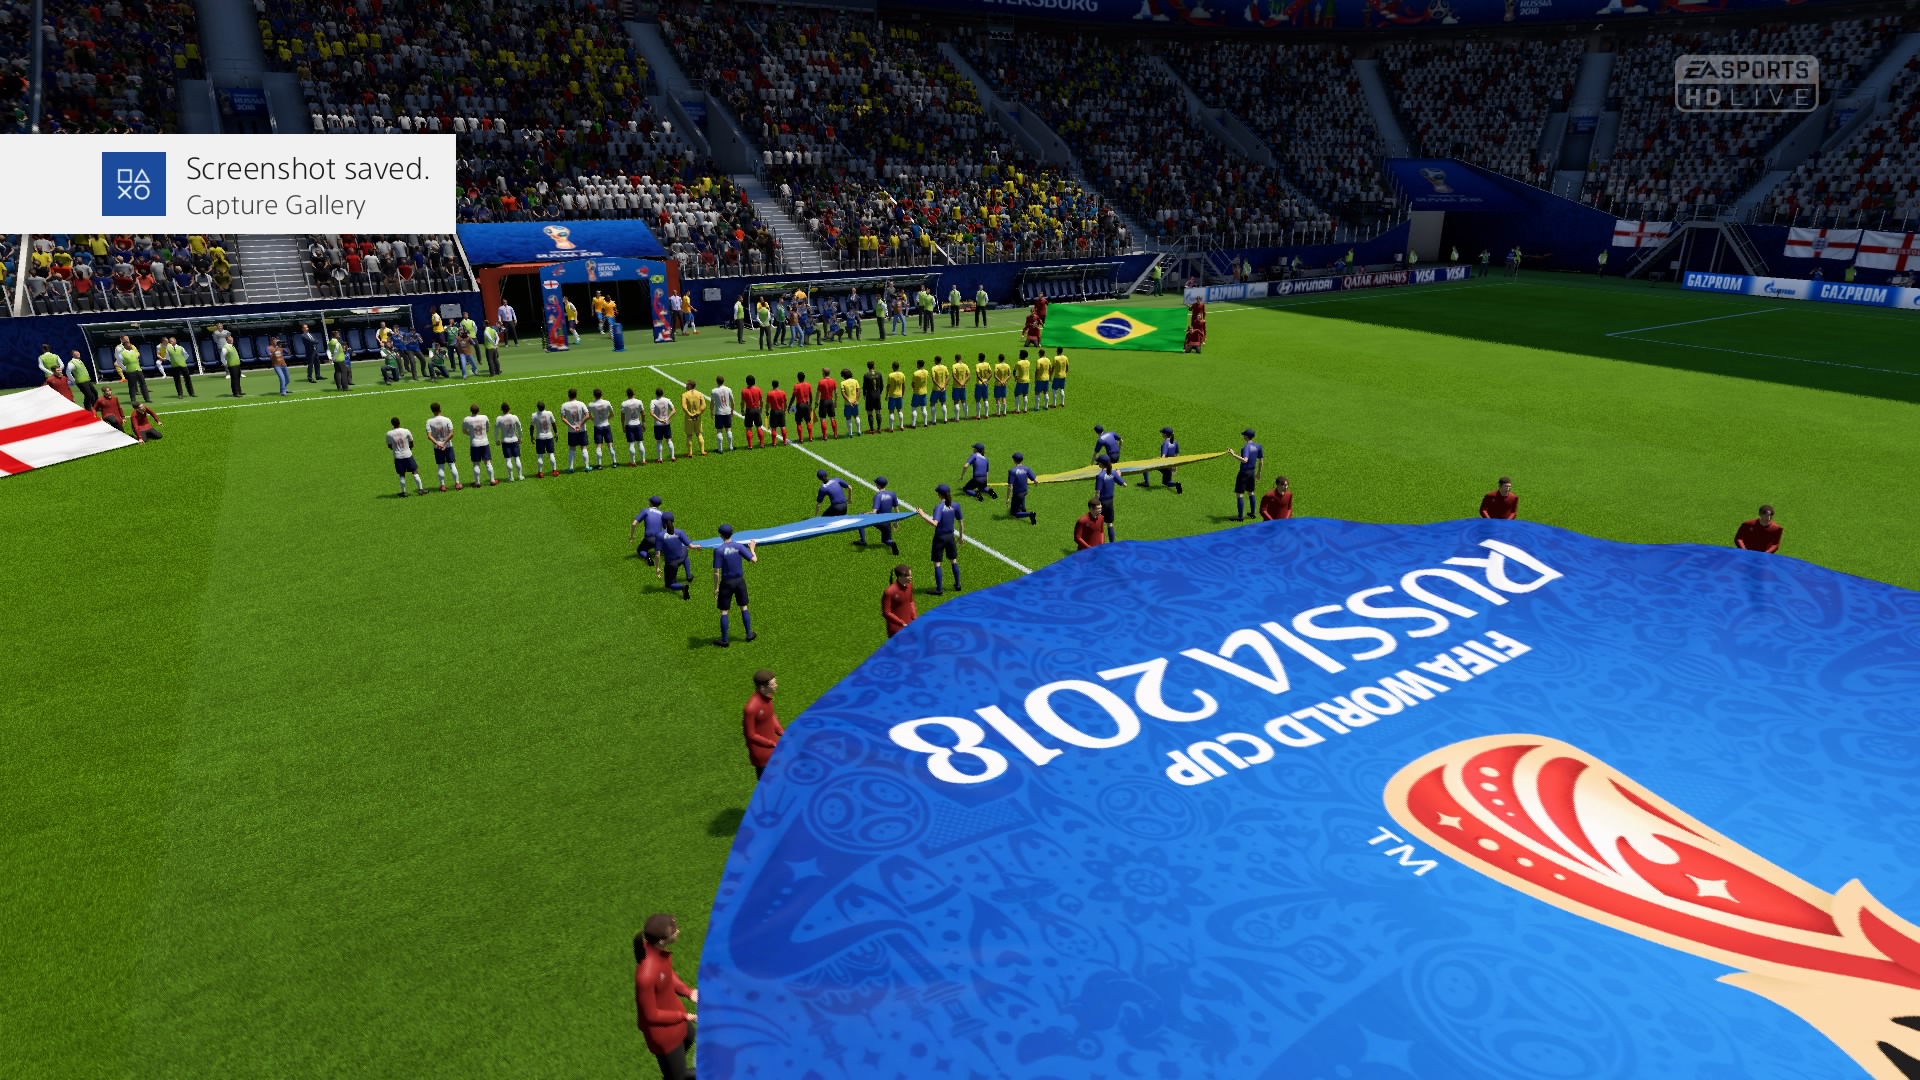 FIFA 18 _ FIFA World Cup™ Kick Off 0-0 ENG V BRA, 1st Half_3.jpg